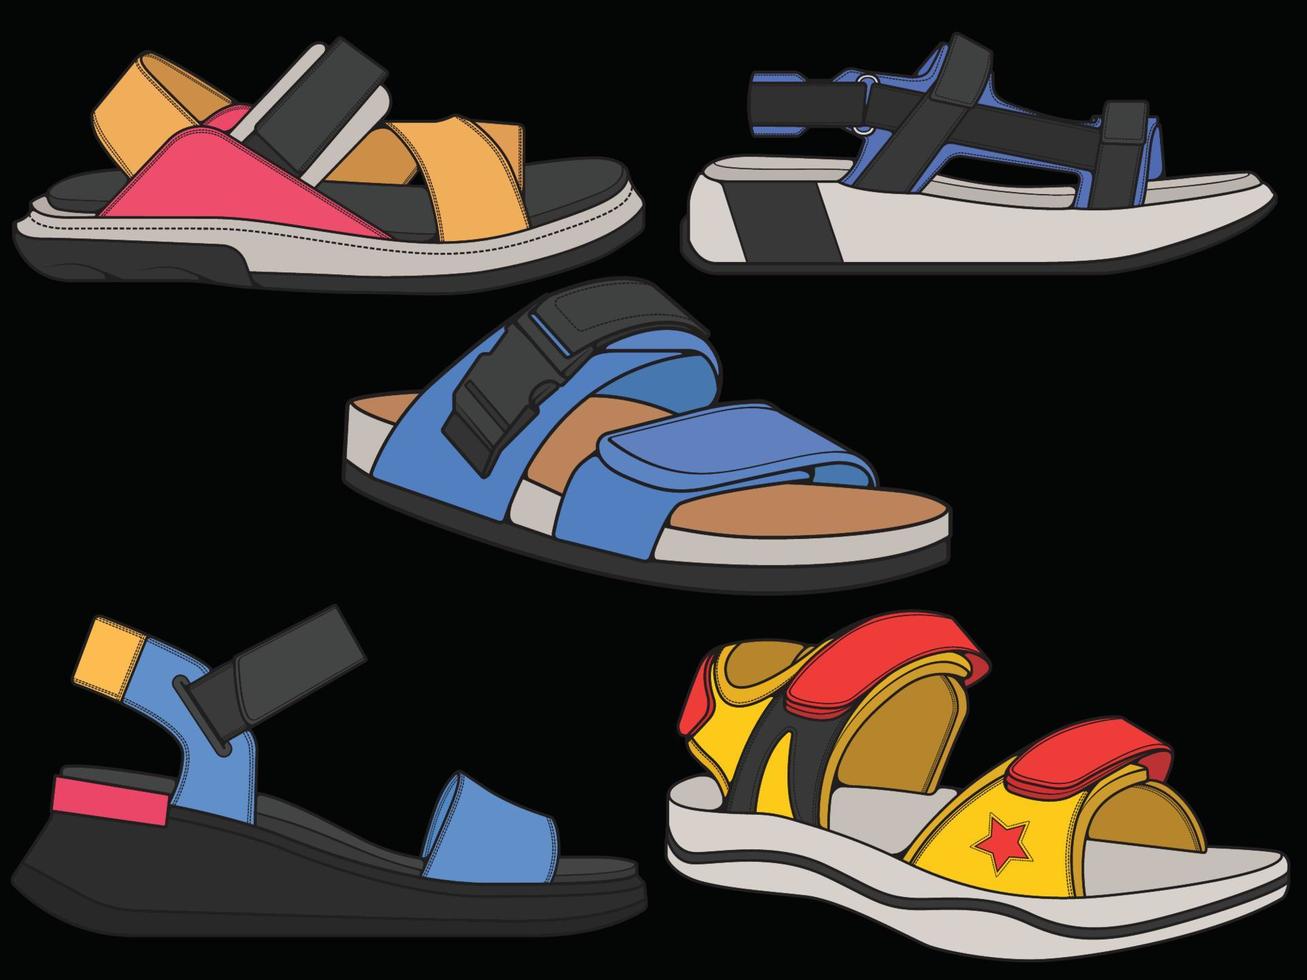 moda sandália vector conjunto ilustração com fundo preto. sapato conjunto de verão dos desenhos animados de sandália. calçado de verão dos desenhos animados conjunto isolado.